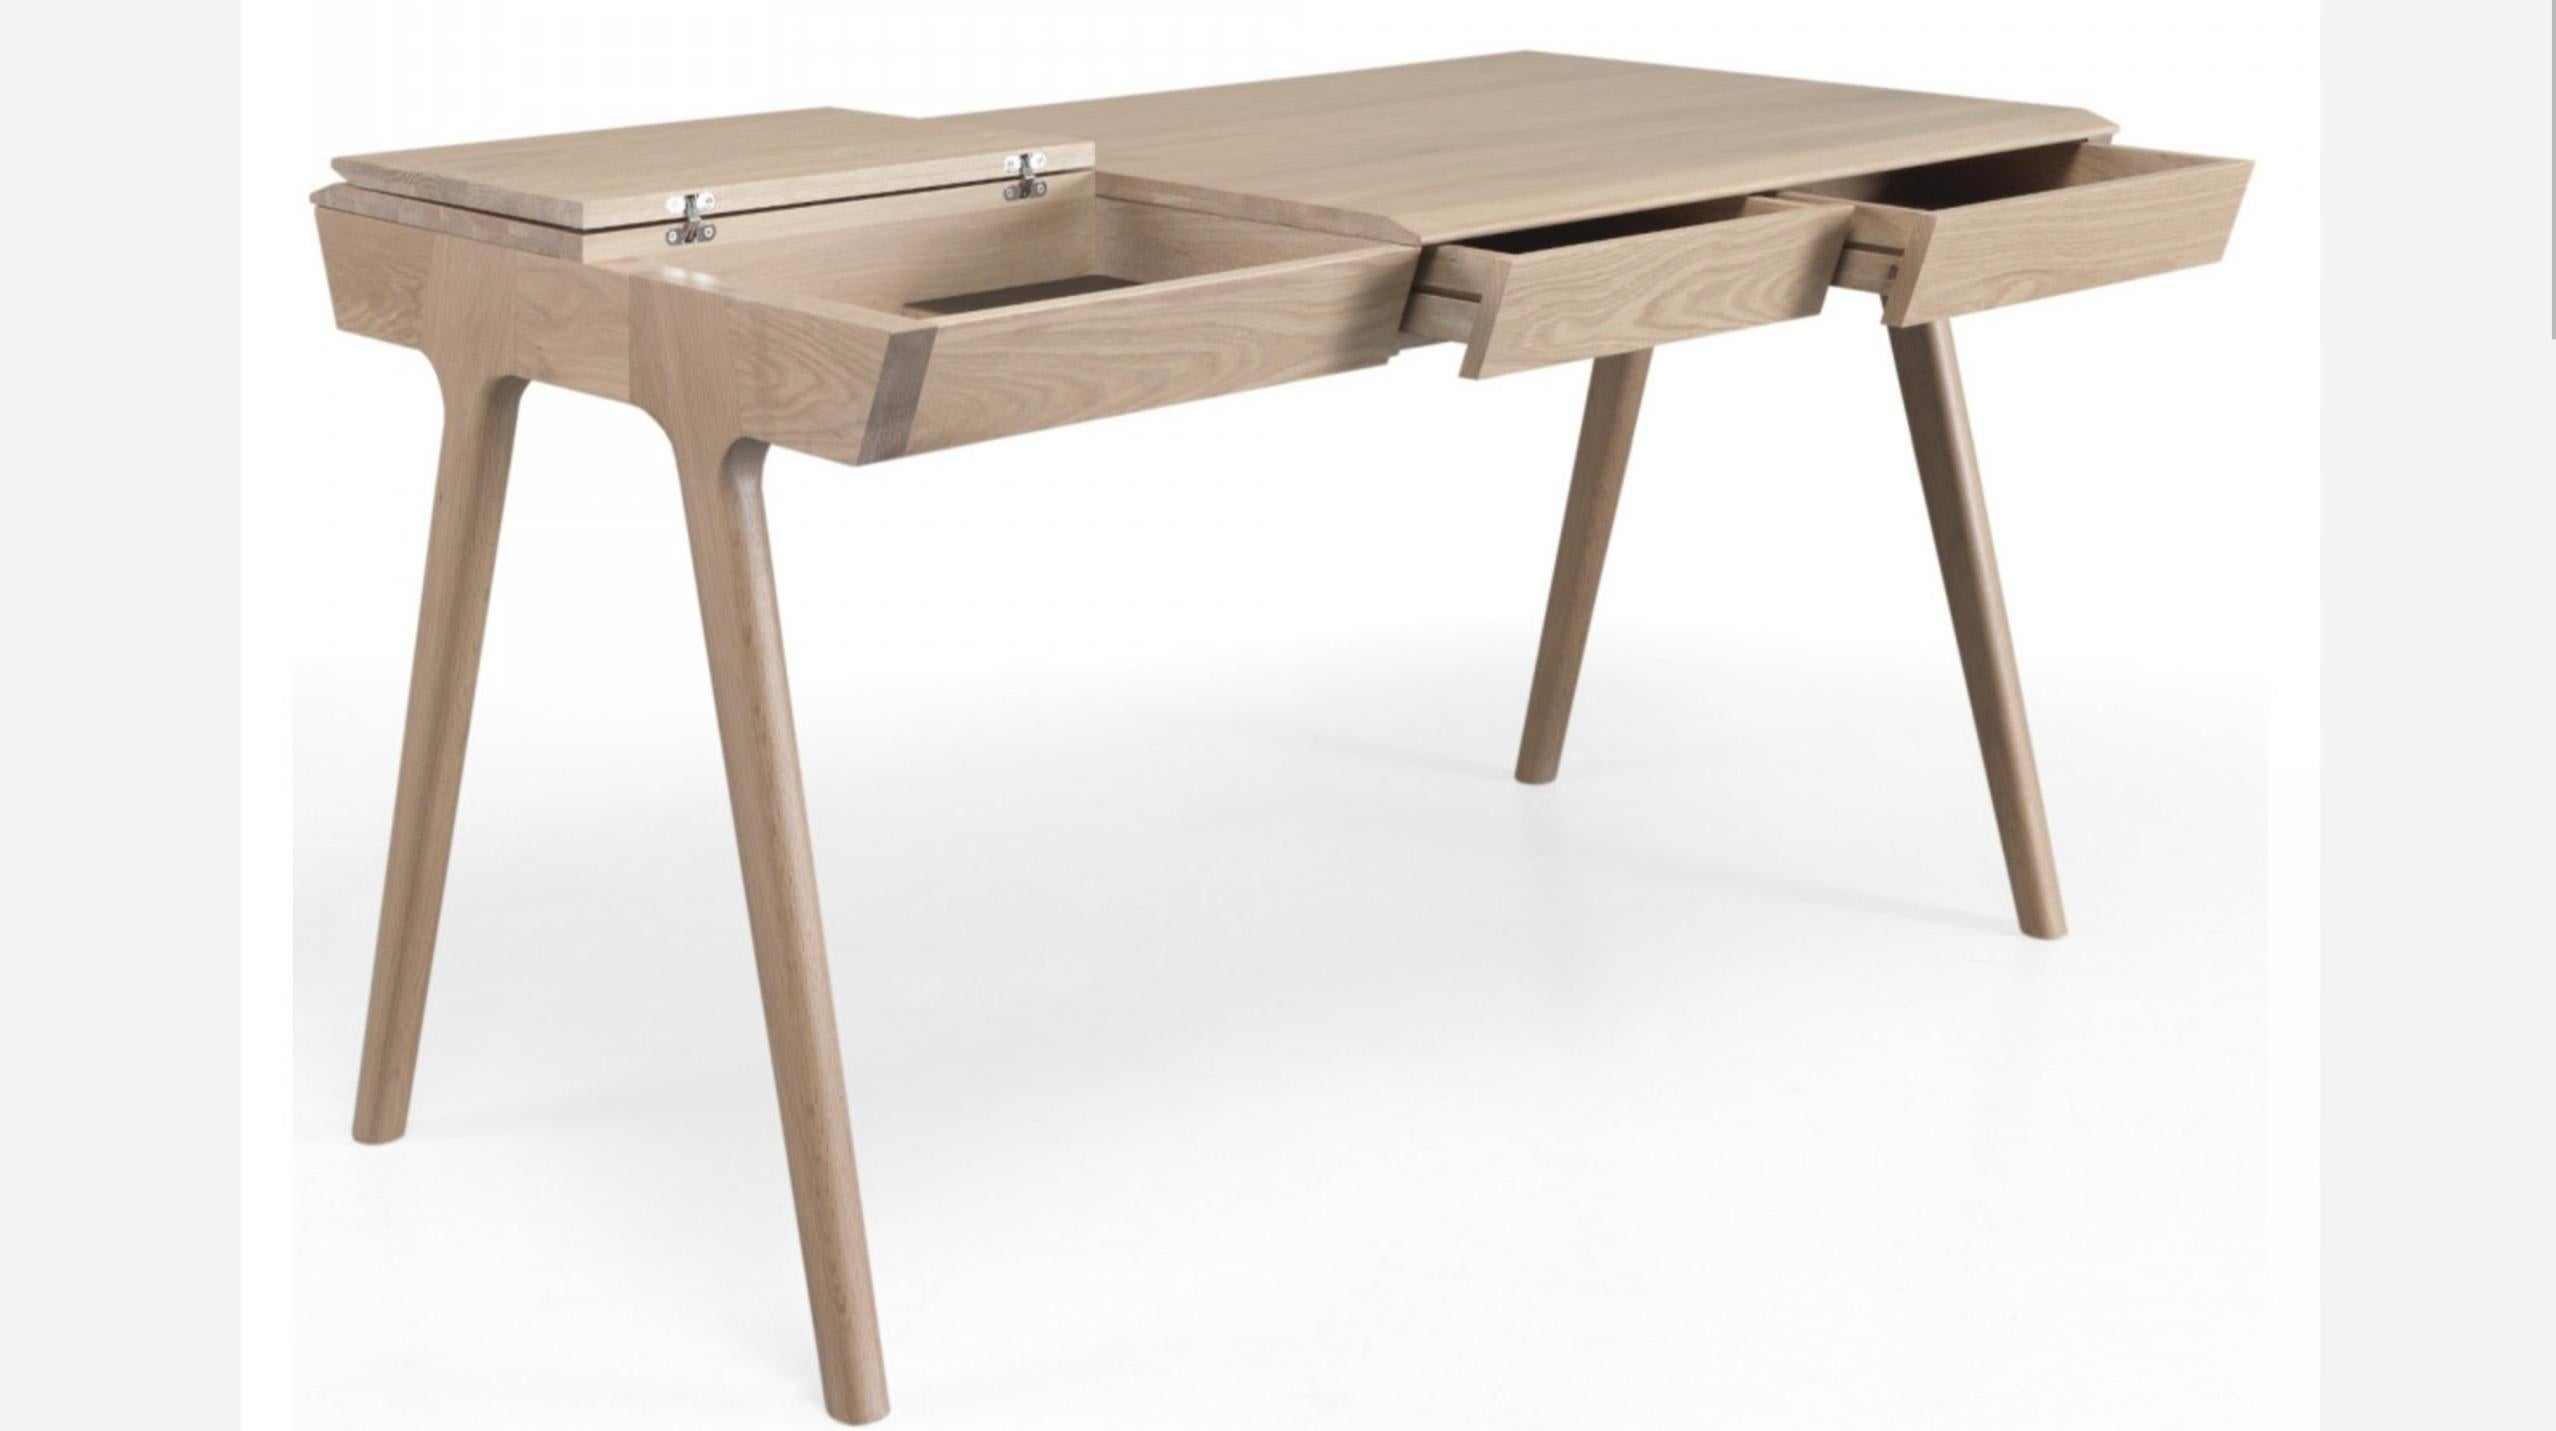 Wunderschöner handgefertigter kompakter Schreibtisch im nordischen Stil aus  Eichenholz massiv  bietet mit drei Schubladen, einem Geheimfach und zwei Deckelfächern eine echte Stauraumlösung. Minimalistisch, elegant und praktisch. Hochwertige